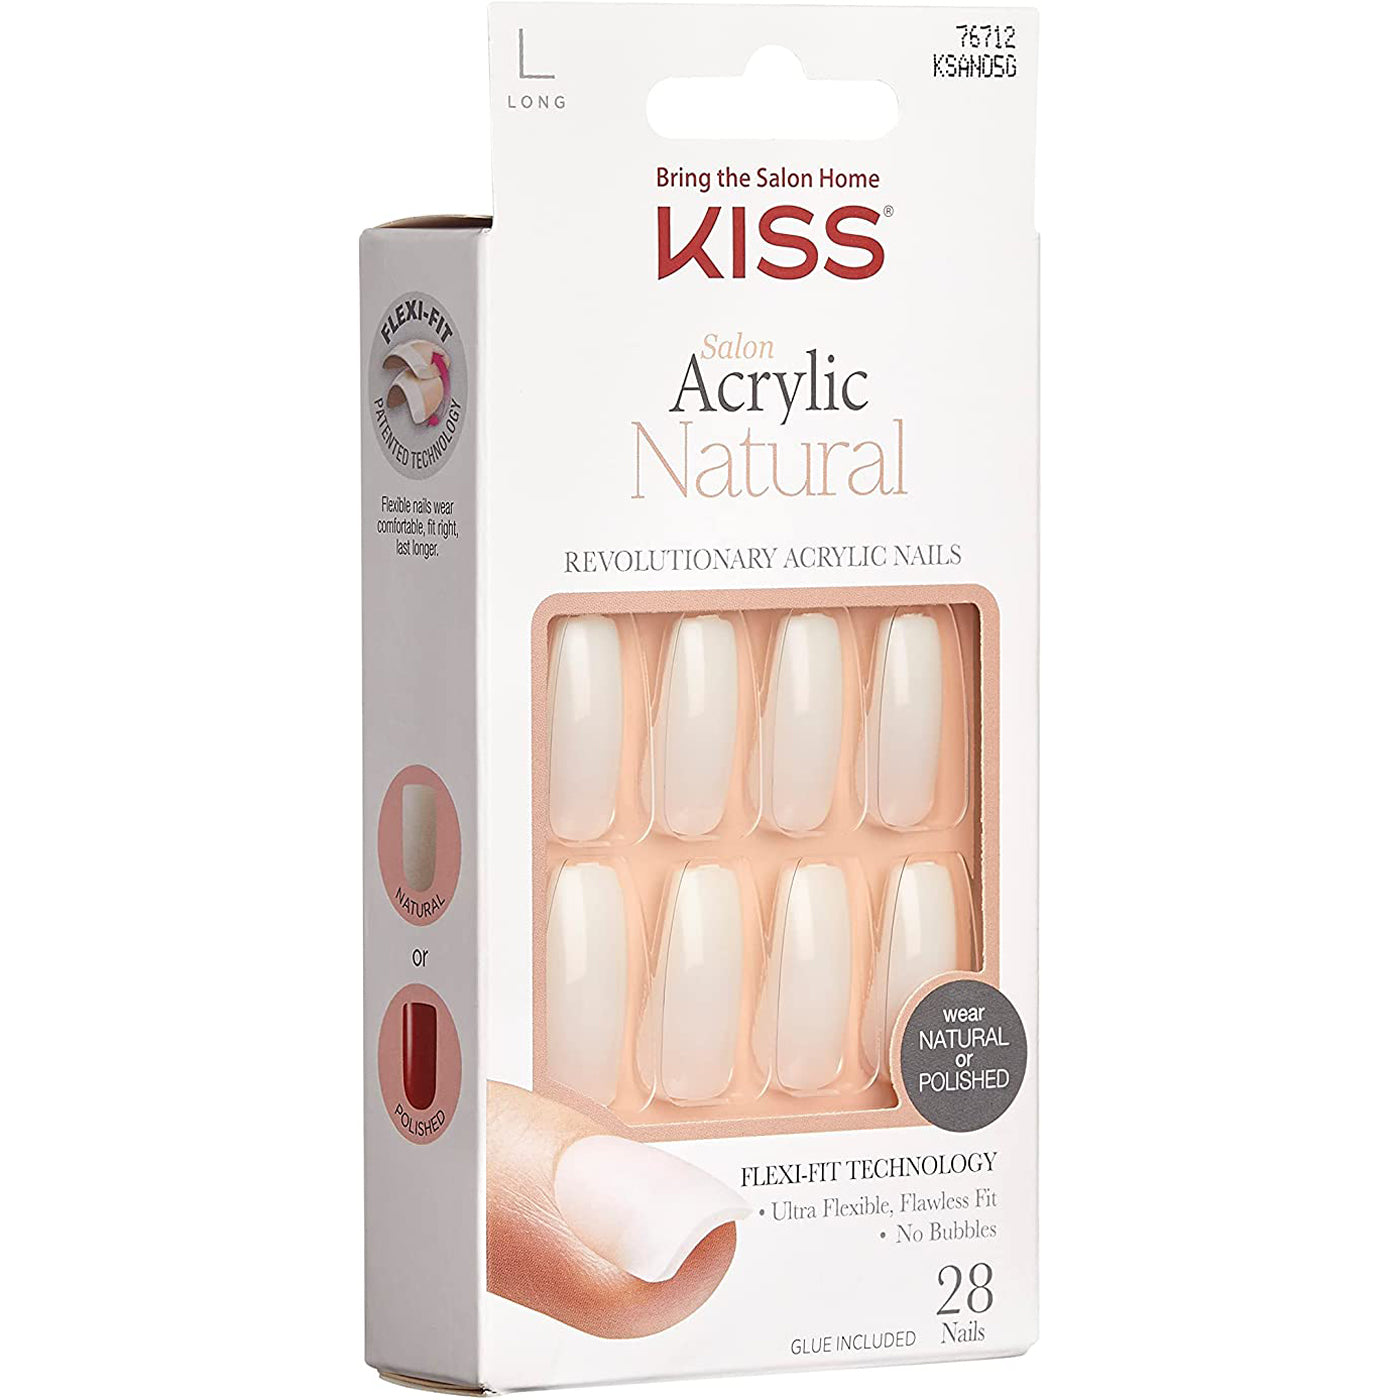 KISS Acrylic Natural Nails - Strong Enough